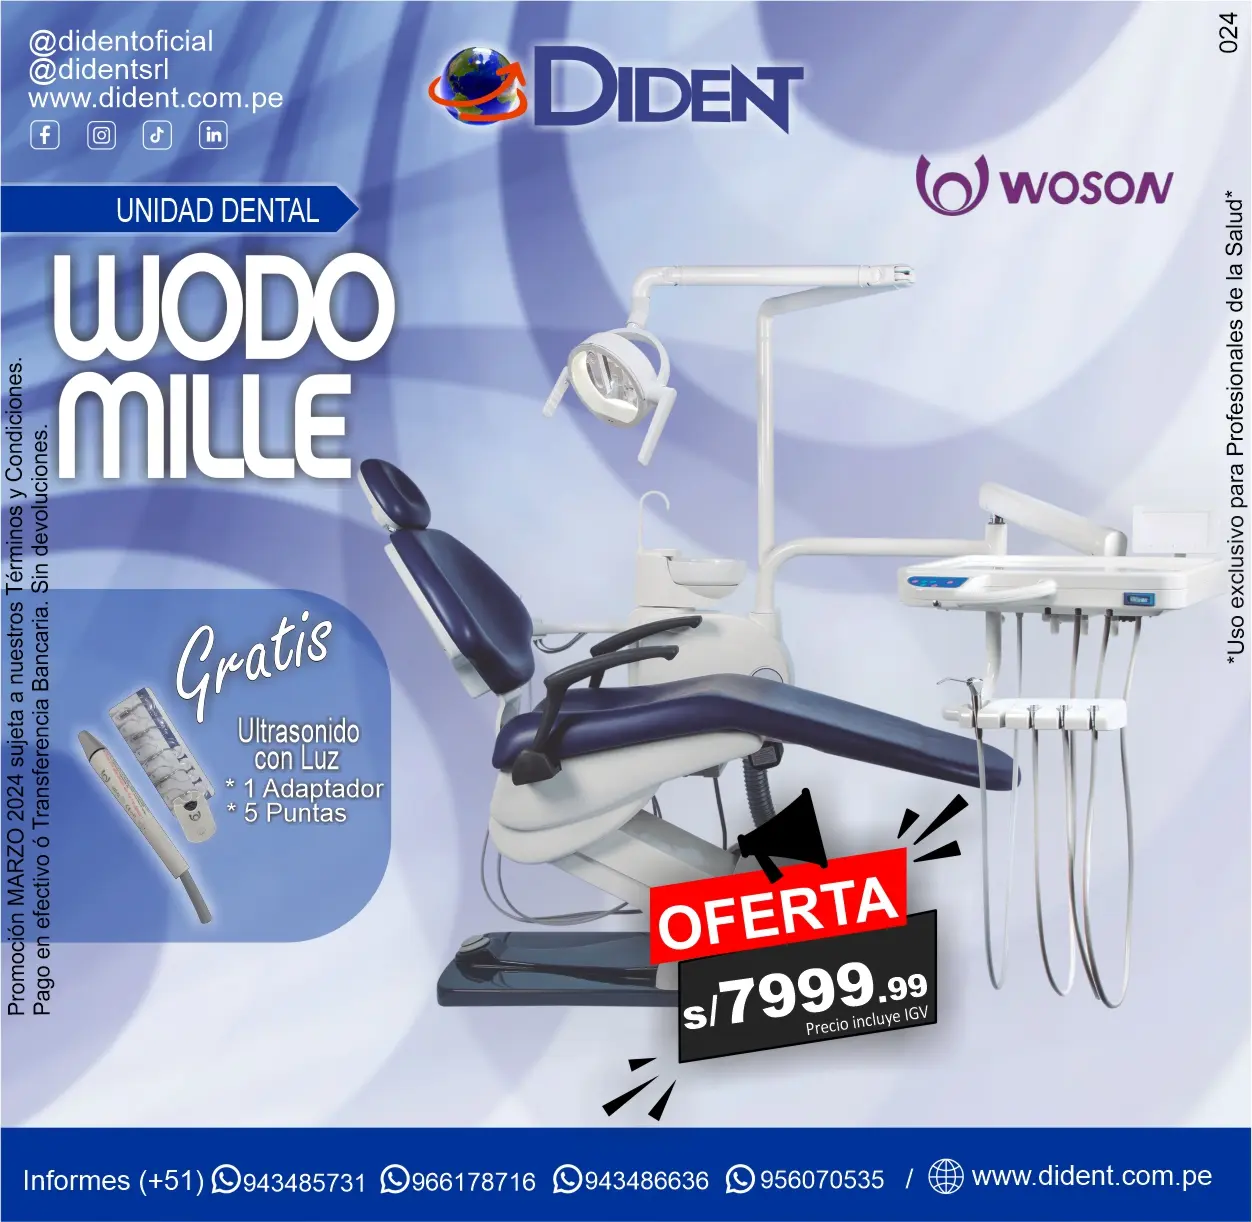 Unidad Dental Wodo Mille Woson + Gratis Ultrasonido con luz + 1 Adaptador +5 Puntas